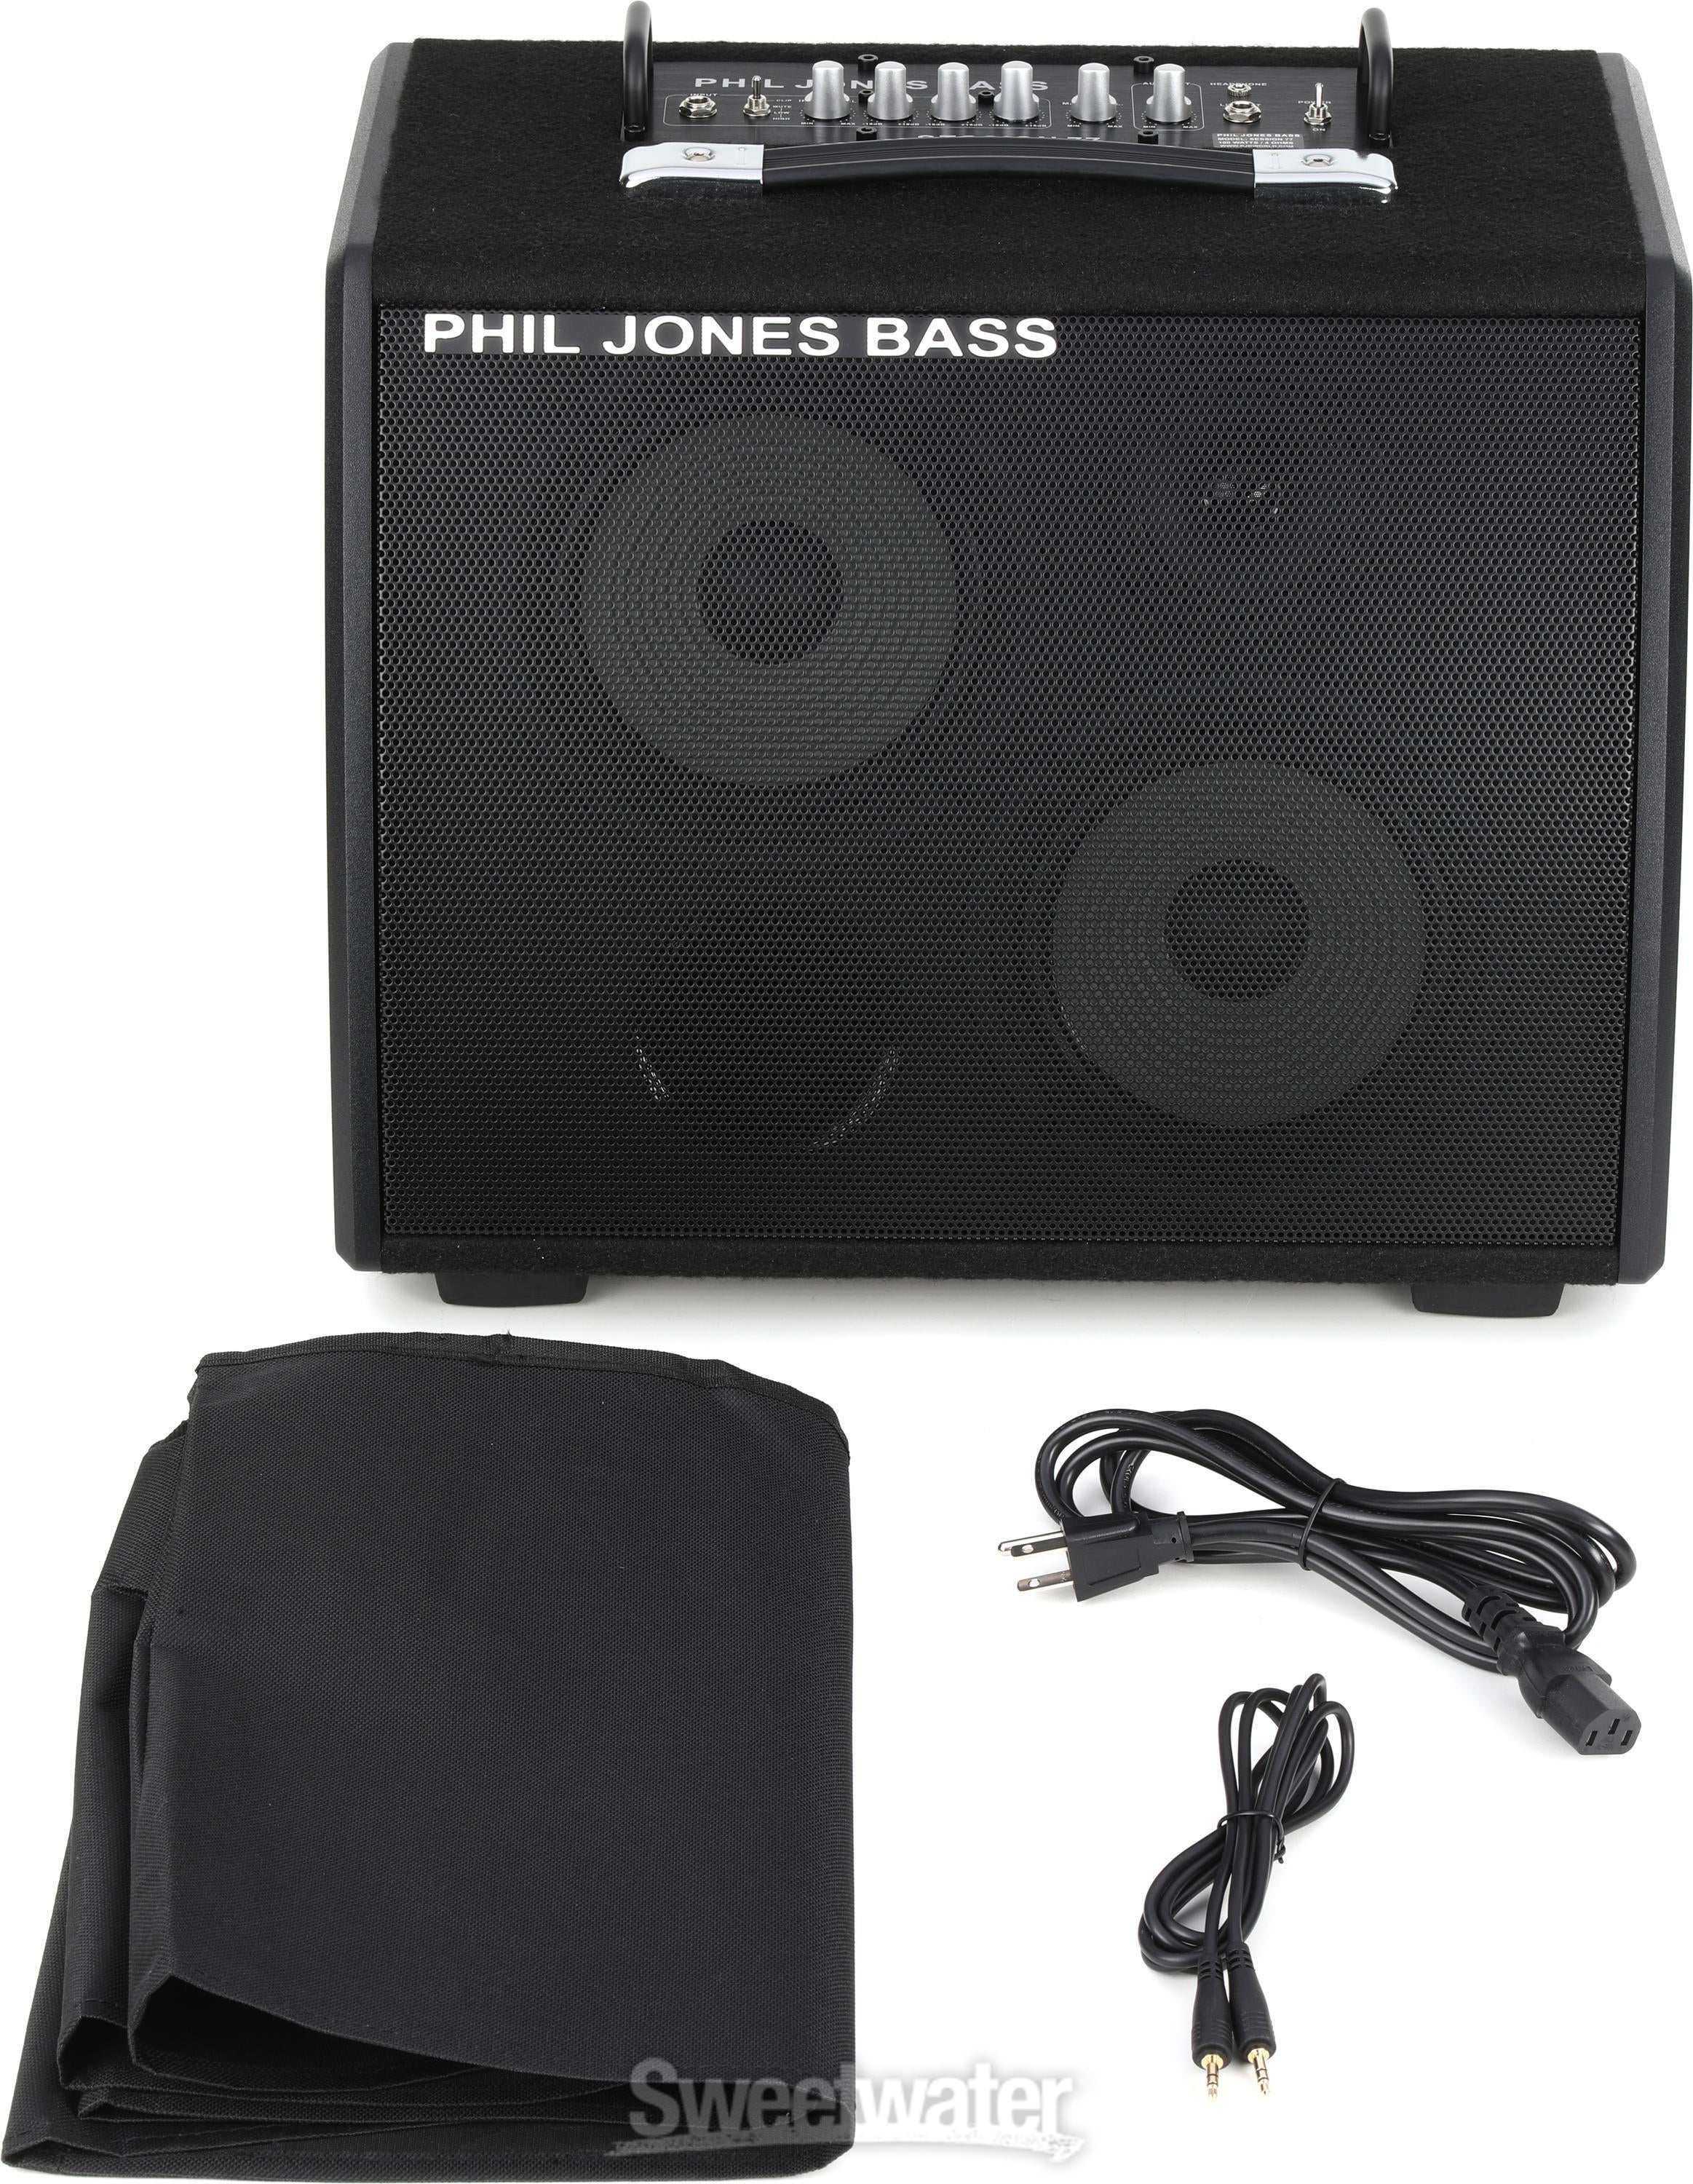 Phil Jones Bass Session 77 100-watt 2 x 7-inch Bass Combo Reviews 